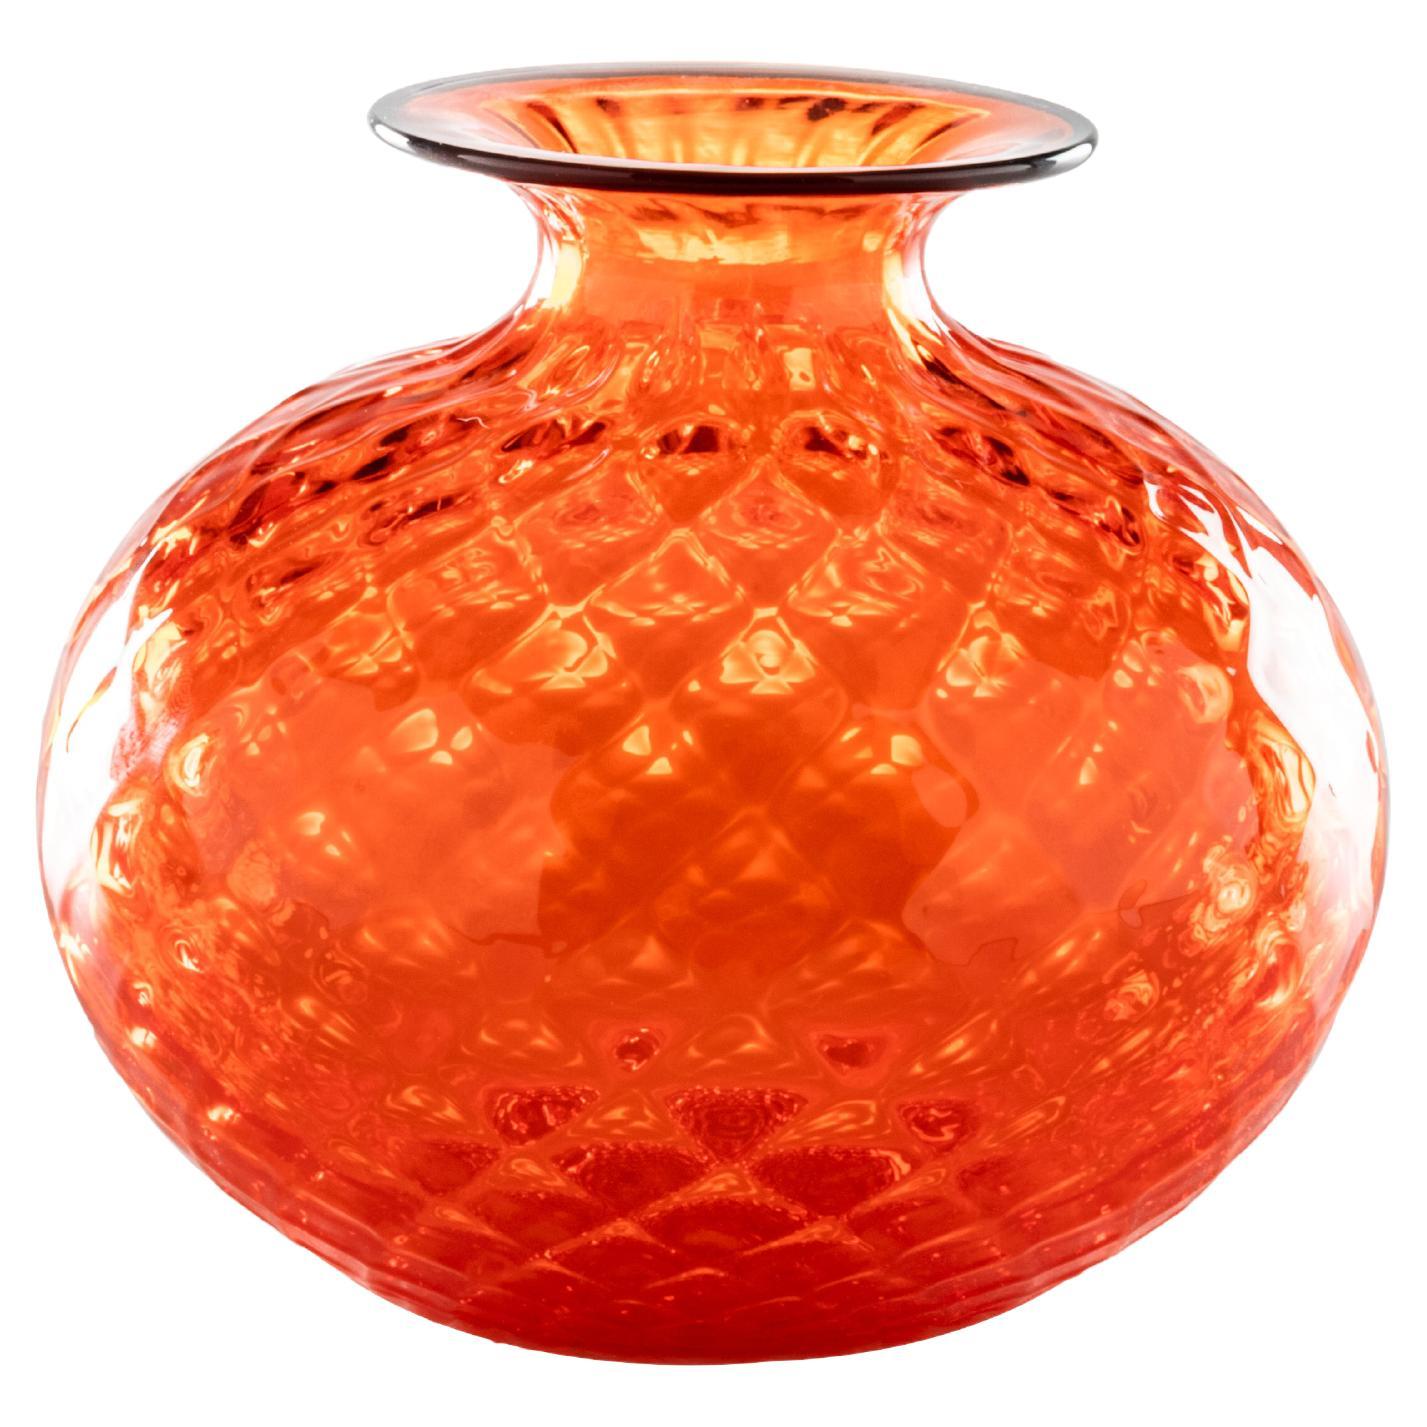 Monofiore Balaton Short Glass Vase in Orange Red Thread Rim by Venini For Sale